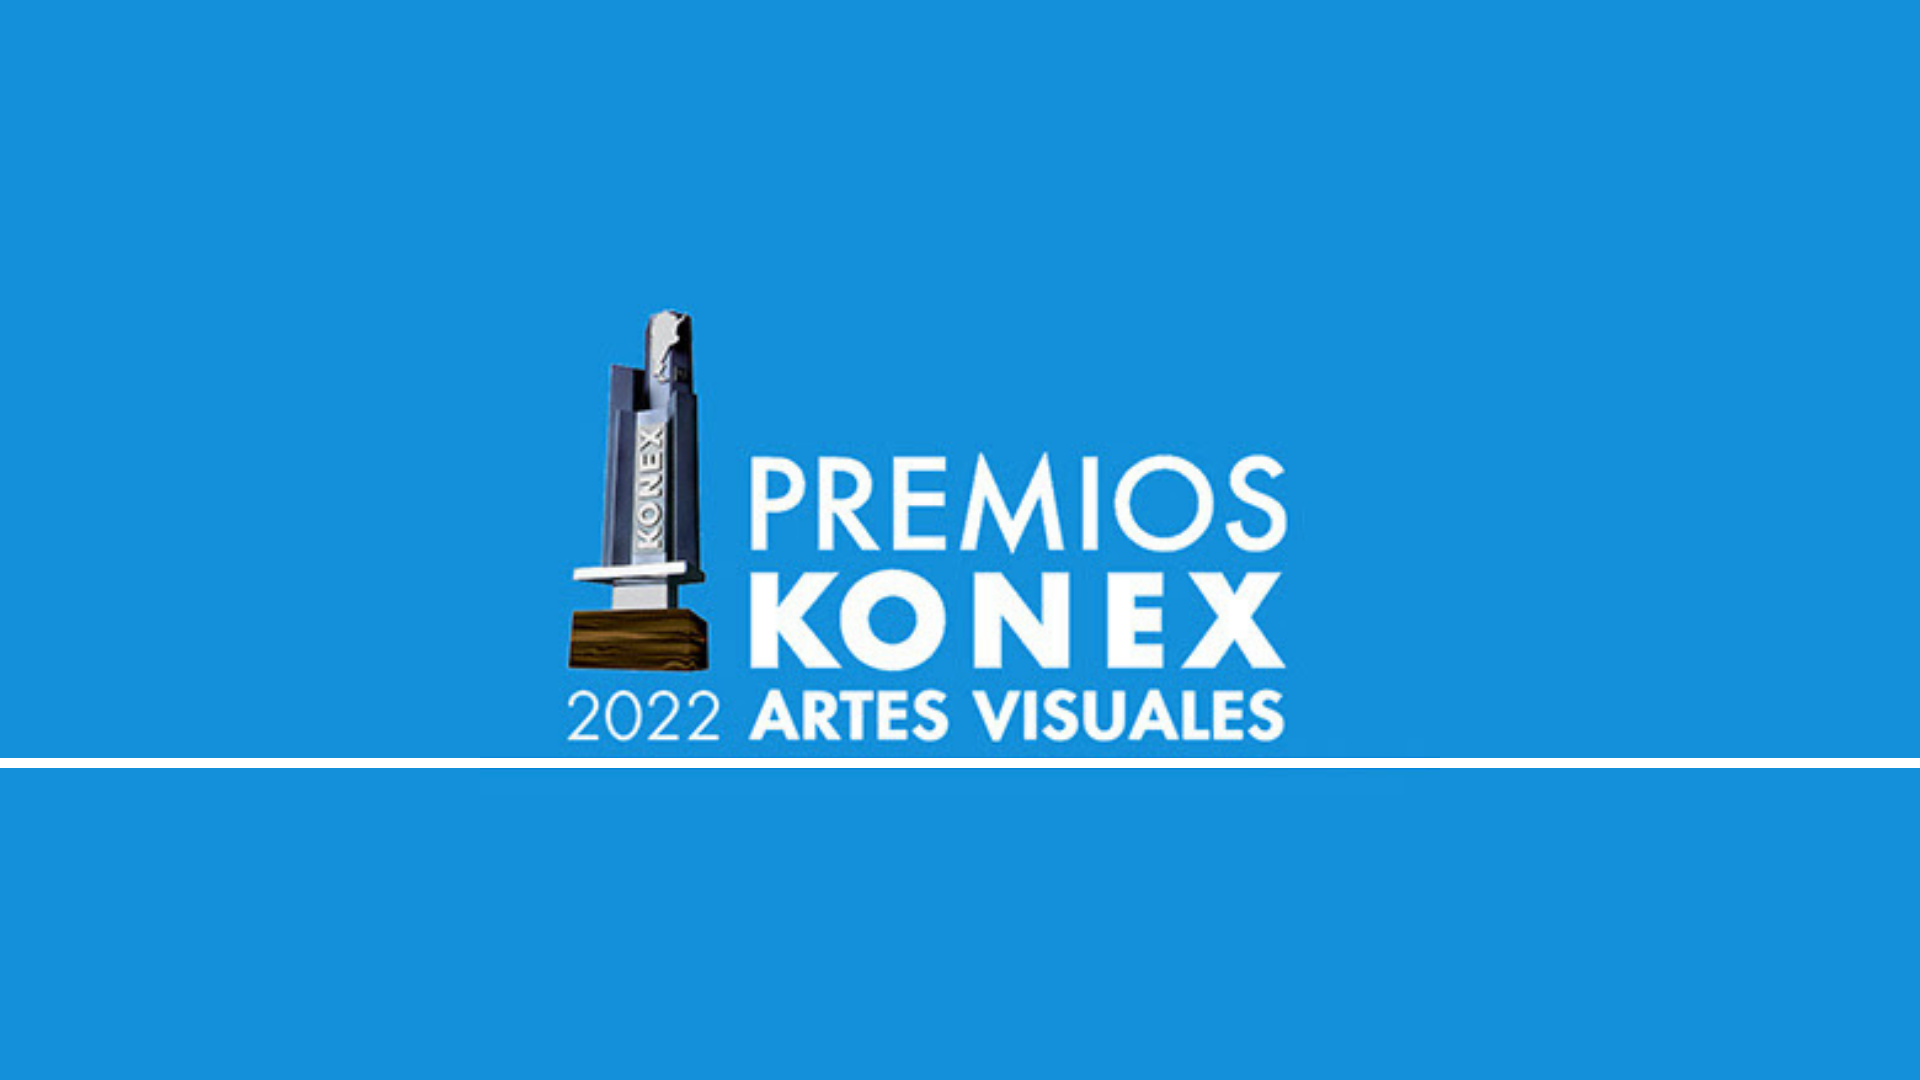 Premios Konex: estas son las 100 figuras más destacadas en las Artes Visuales de la década 2012-2021